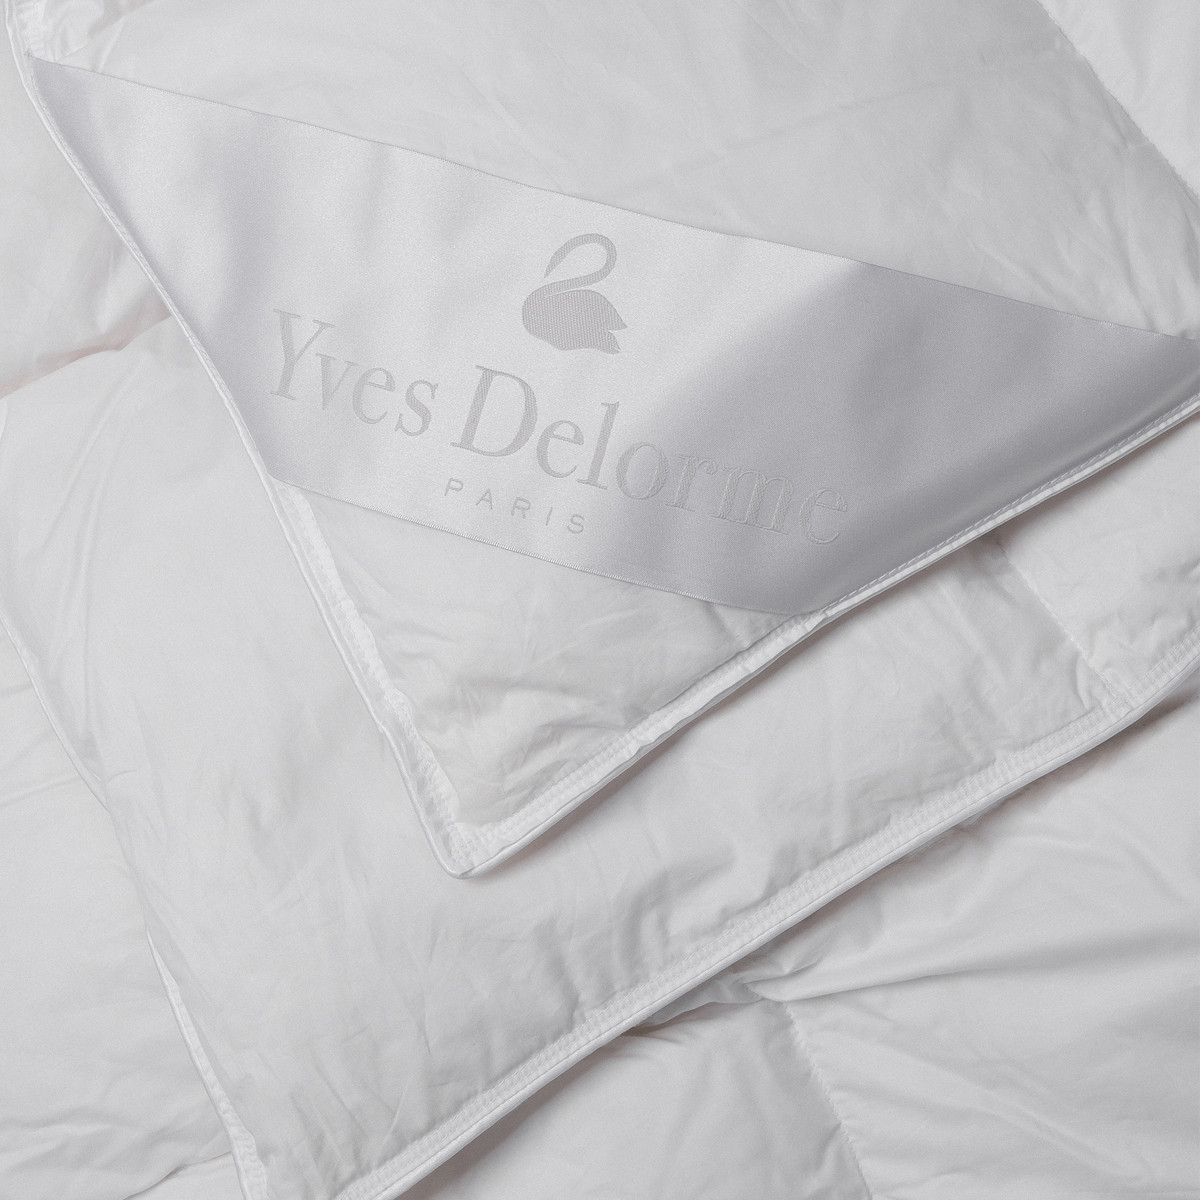 одеяло Yves Delorme Premium Medium  - купить в магазине Yves Delorme Russia